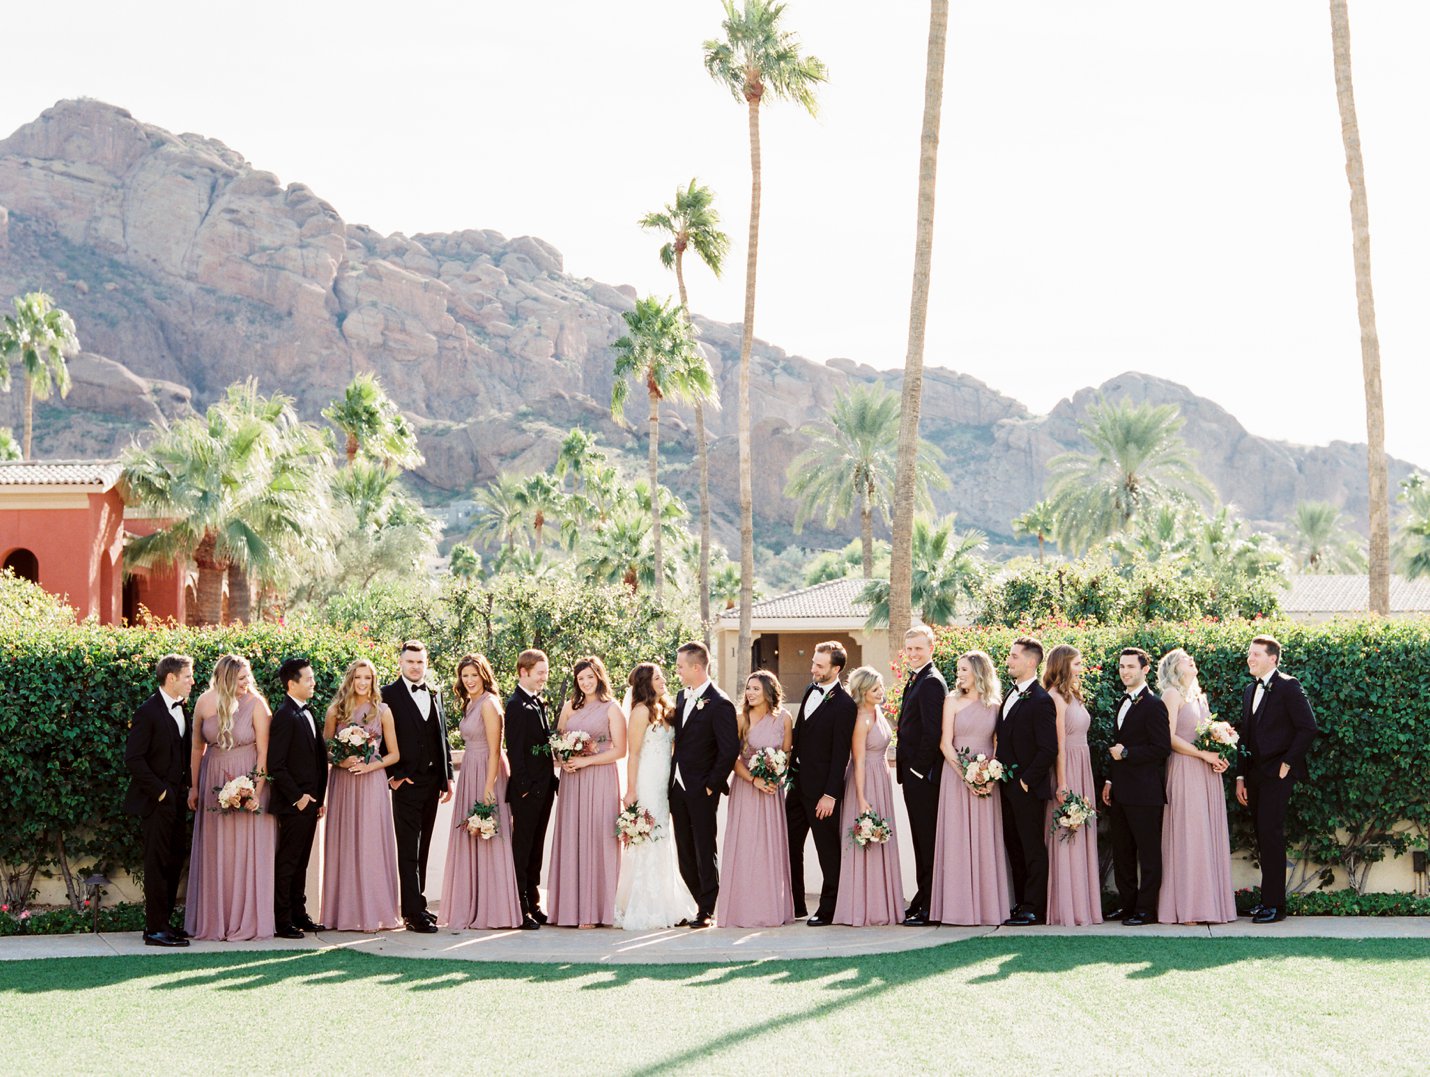 Omni Montelucia wedding - Scottsdale Wedding Photographer - Rachel Solomon Photography